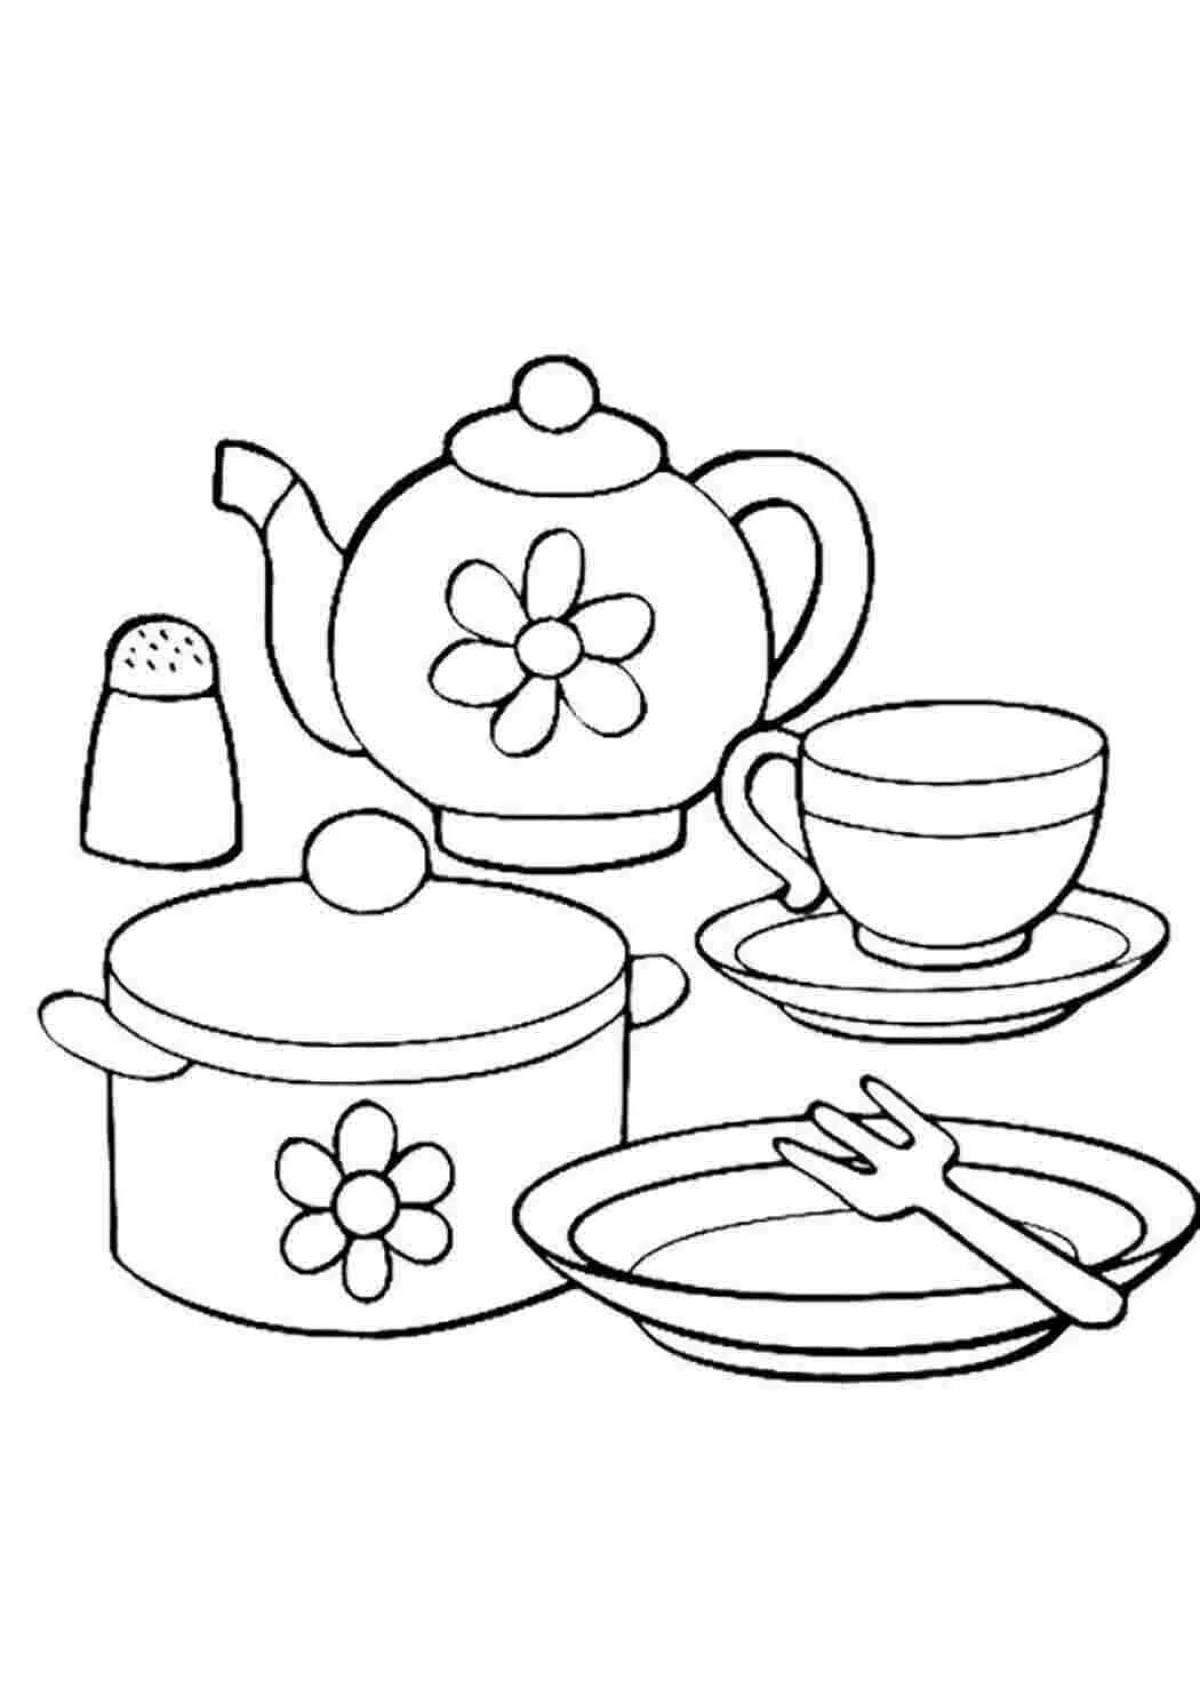 Удивительная страница раскраски чайной посуды для малышей